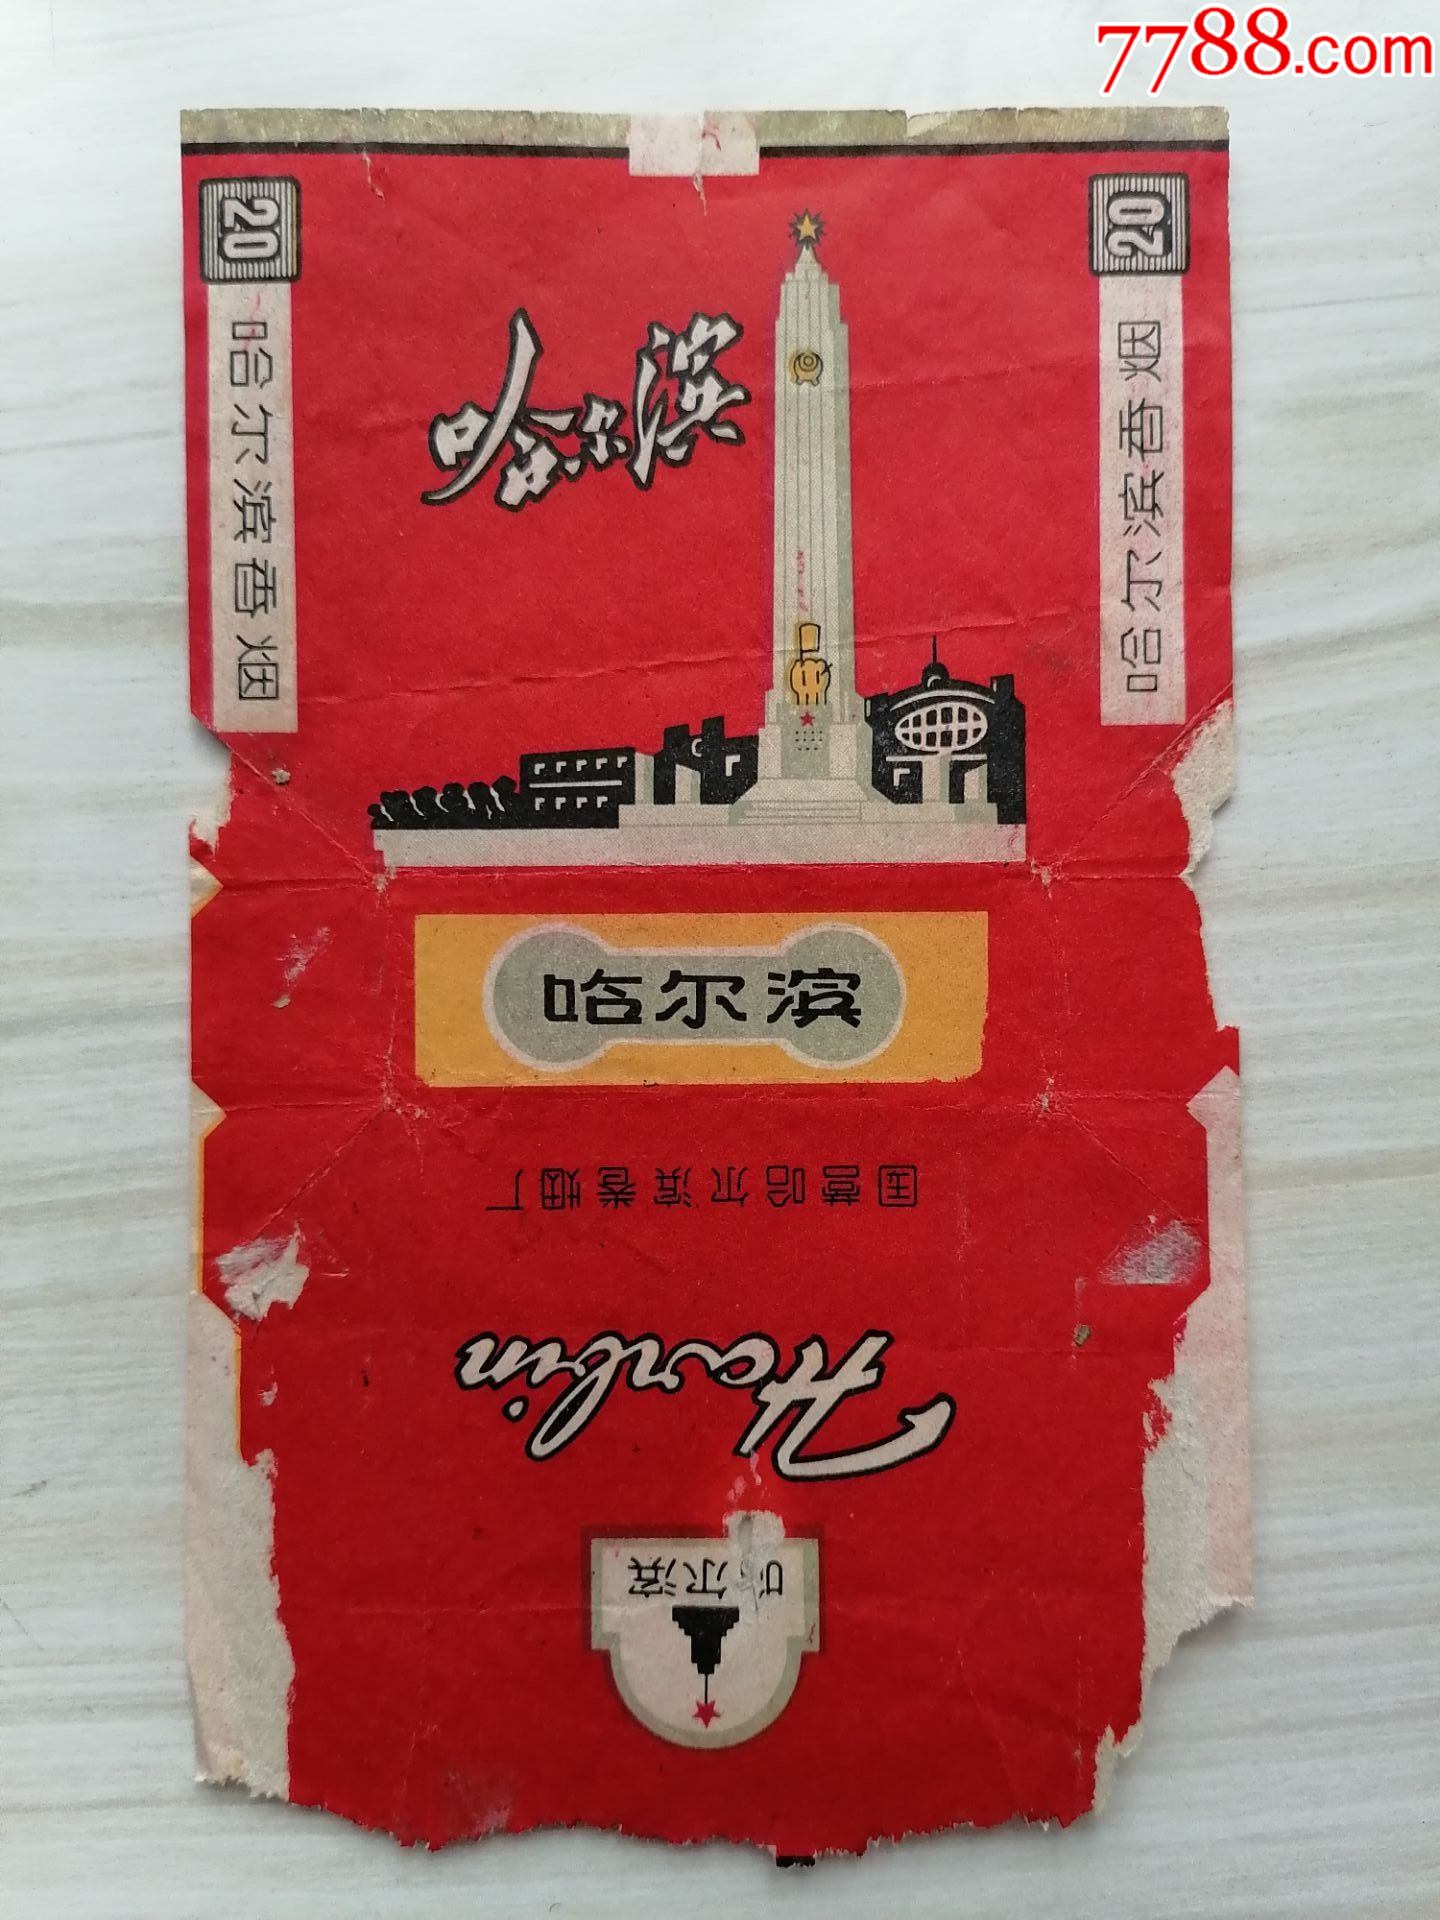 烟标哈尔滨香烟国营哈尔滨卷烟厂货号y5302